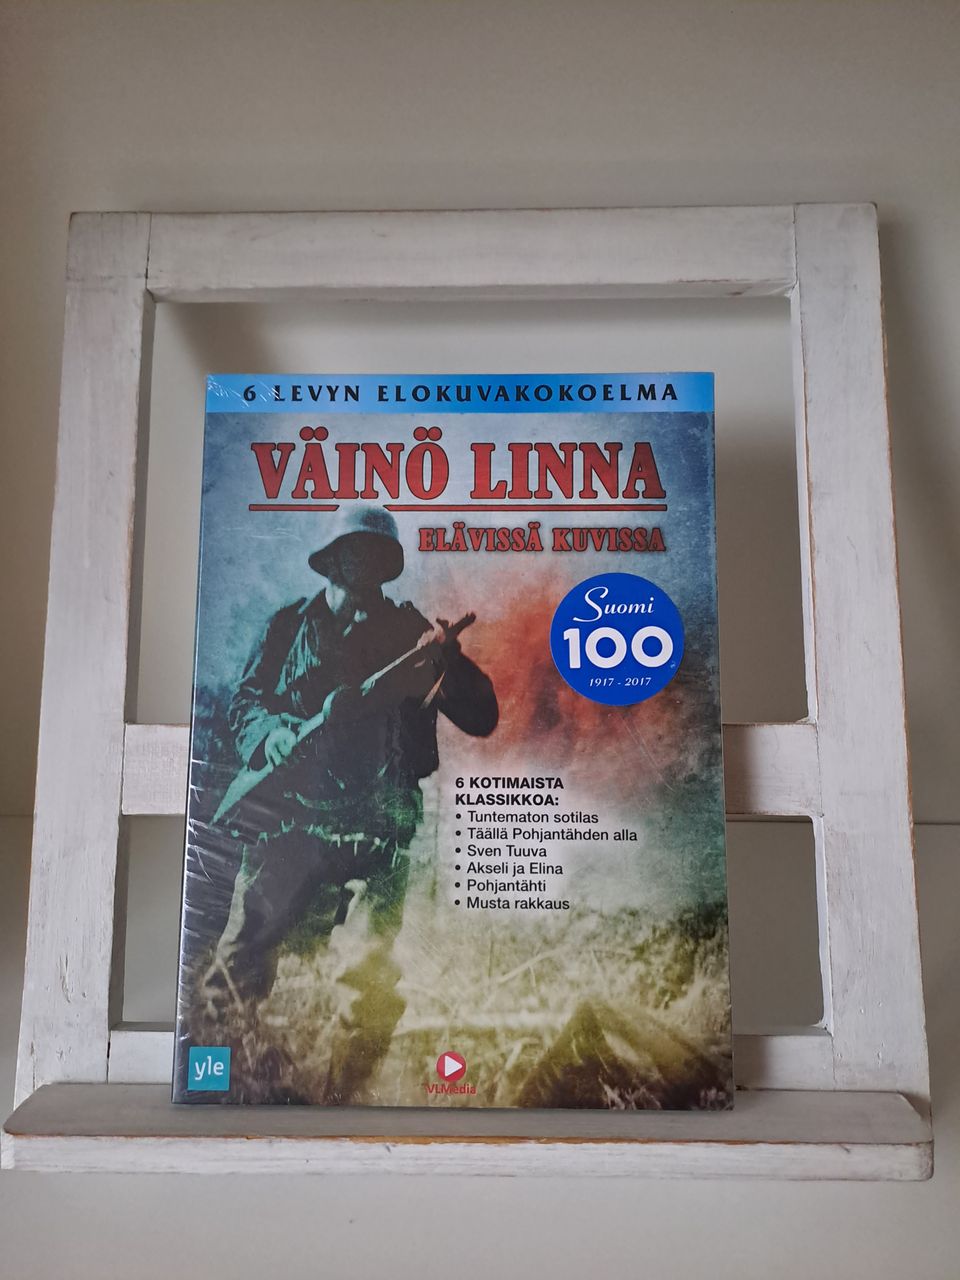 Väinö Linna - Elävissä kuvissa (DVD)